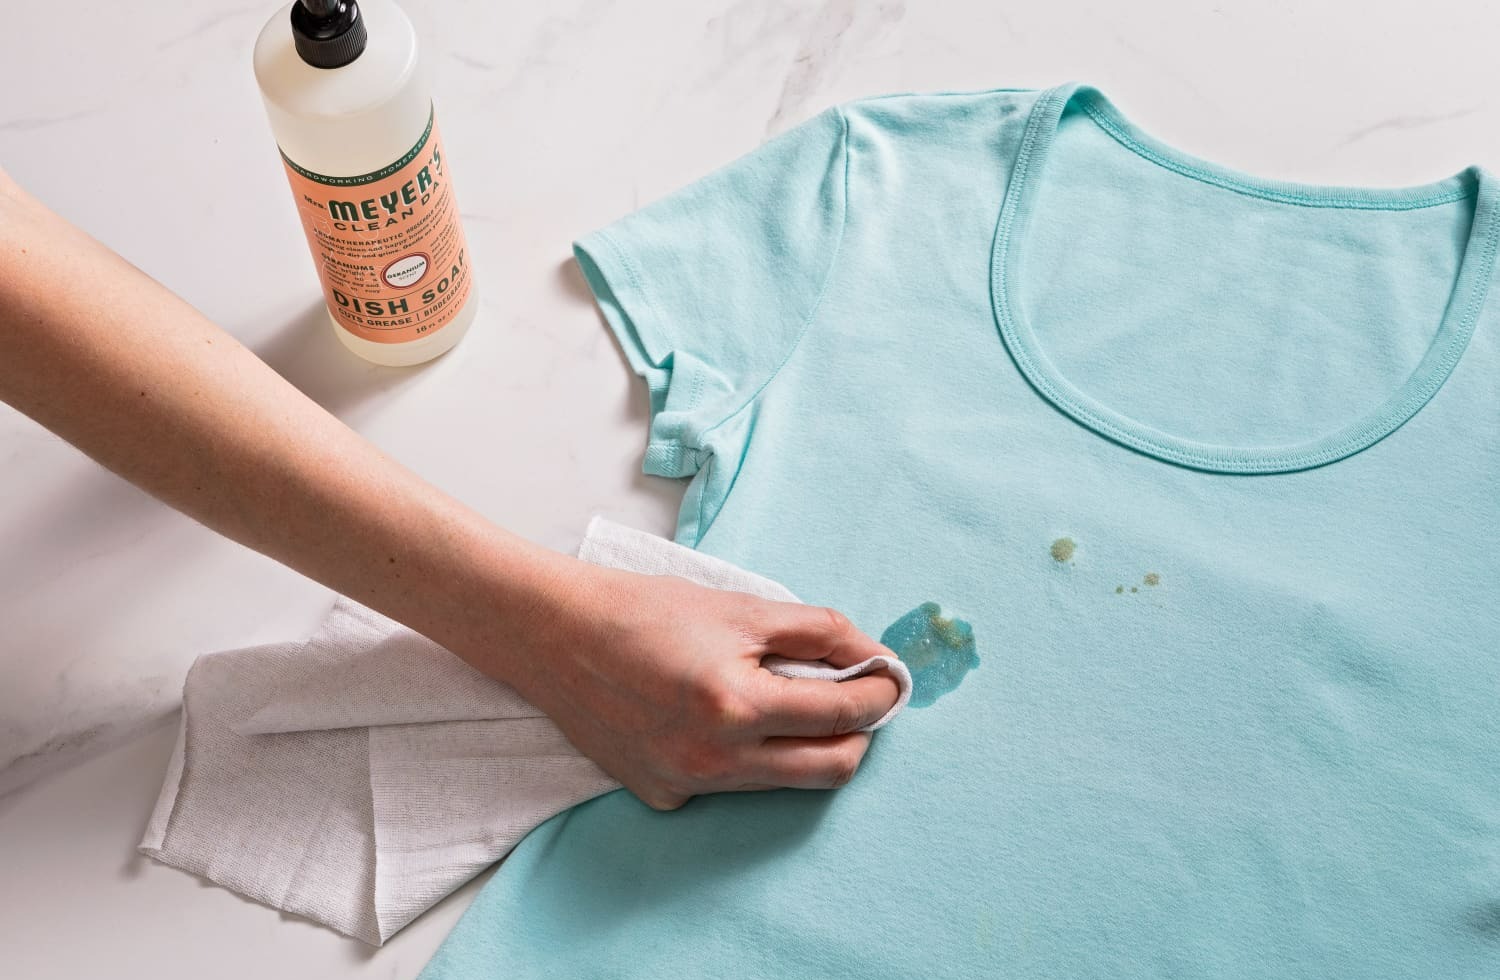 زنی در حال لکه گیری یک تیشرت سبزابی - پاک کردن لکه مام روی لباس